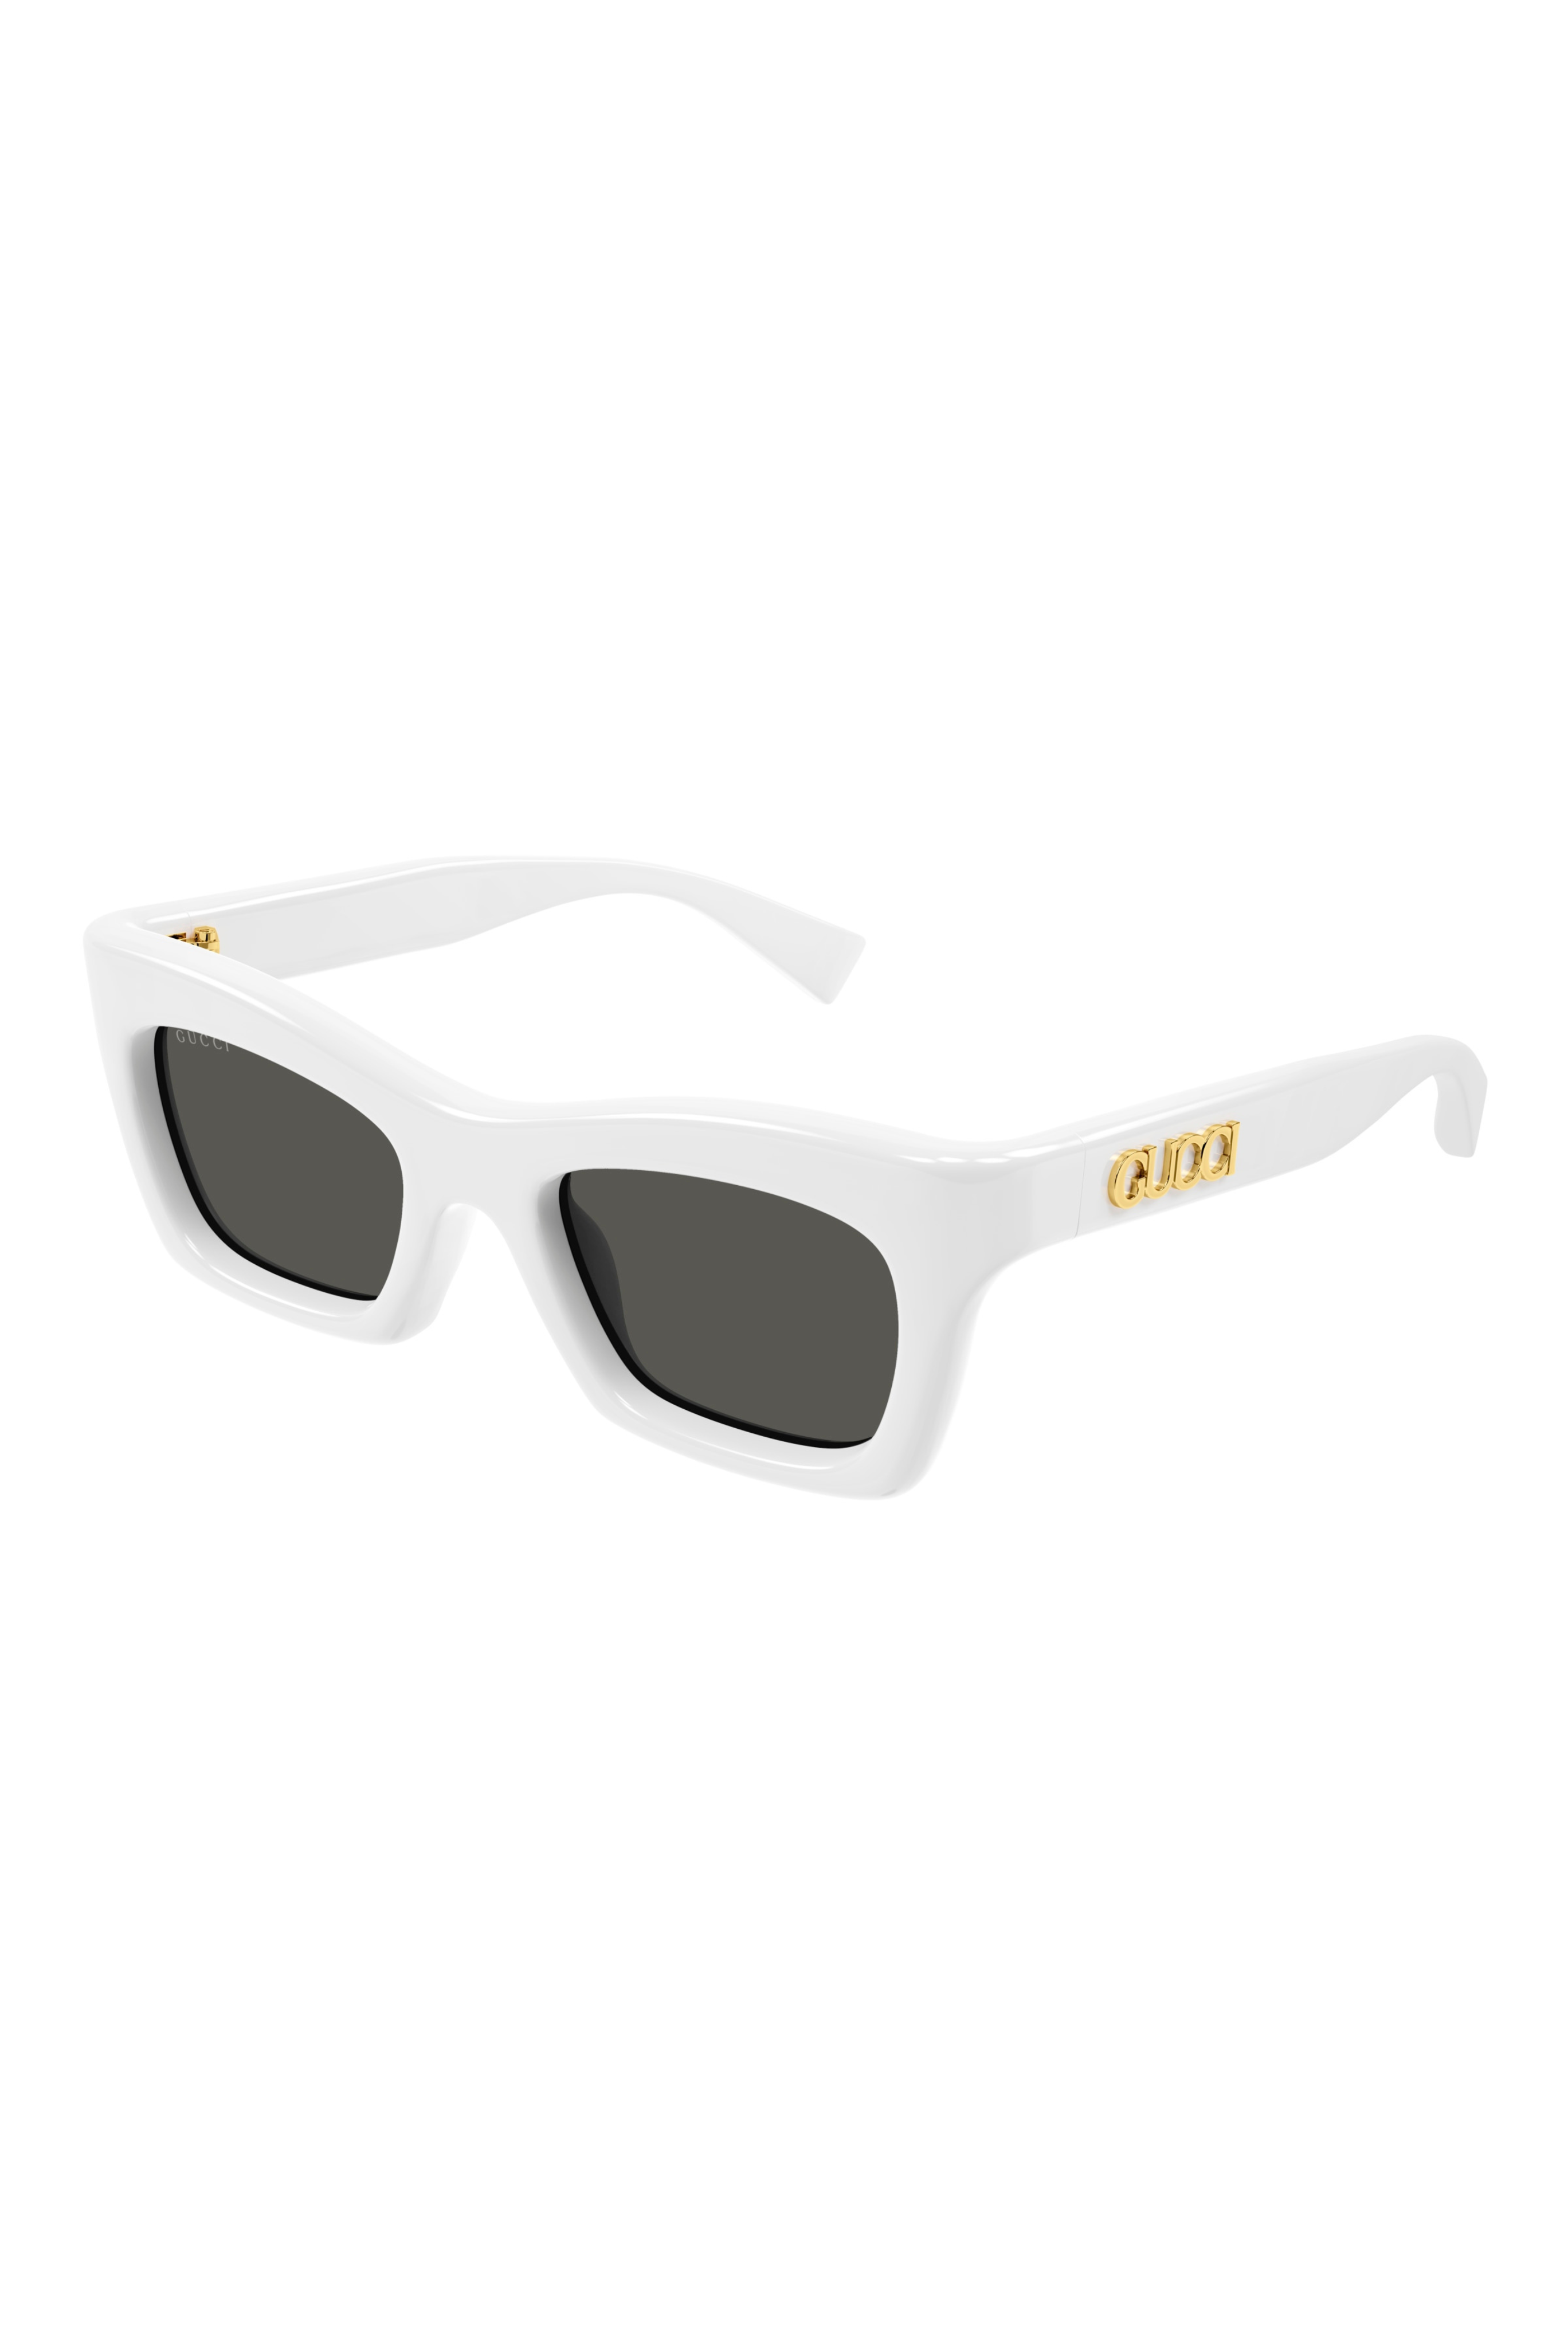 GUCCI Squared Cat Eye Sunglasses in White